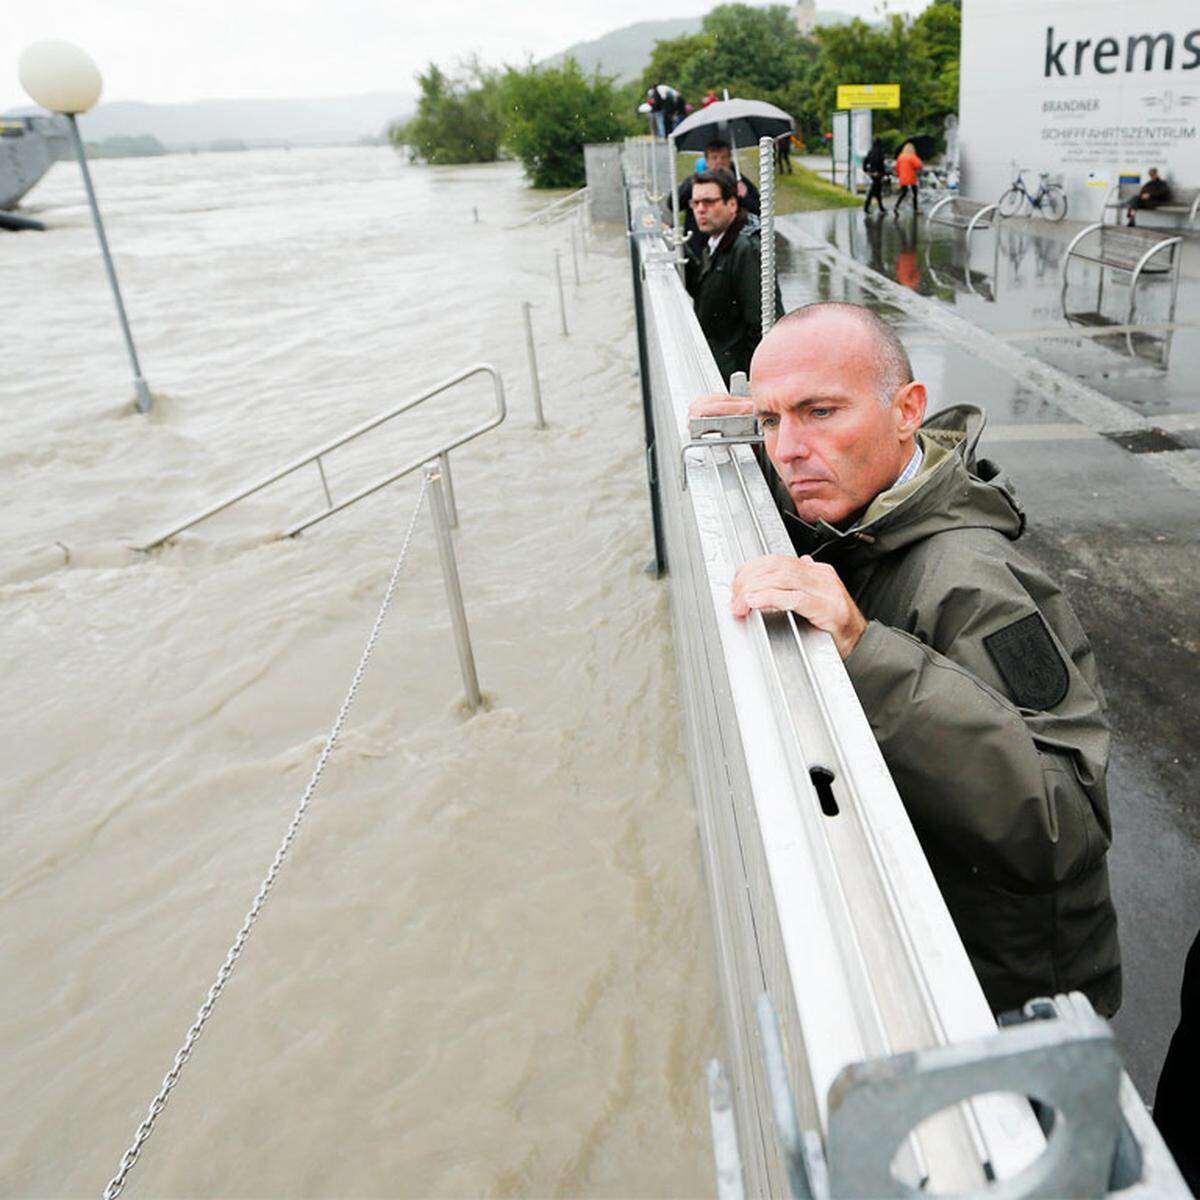 Auch Politiker machten sich ein Bild von der Lage: Verteidigungsminister Gerald Klug kontrollierte persönlich eine Hochwasserschutzwand in Krems. In den anderen Bundesländern haben bereits die Aufräumarbeiten begonnen: Die Bilder finden Sie hier